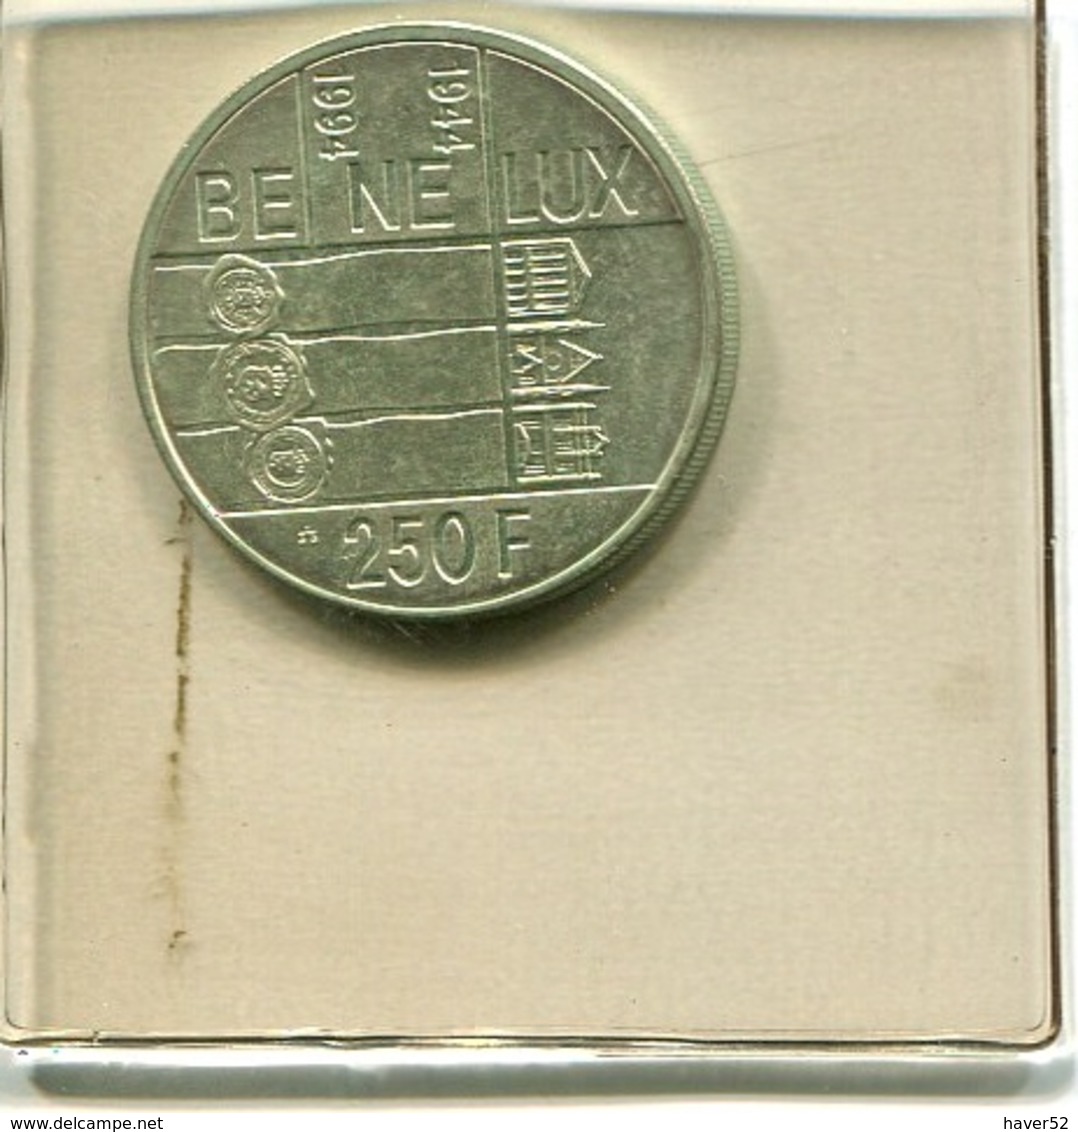 Zilveren Munt Albert II 250 Frank In Originele (verzegelde) Verpakking !! - 250 Frank